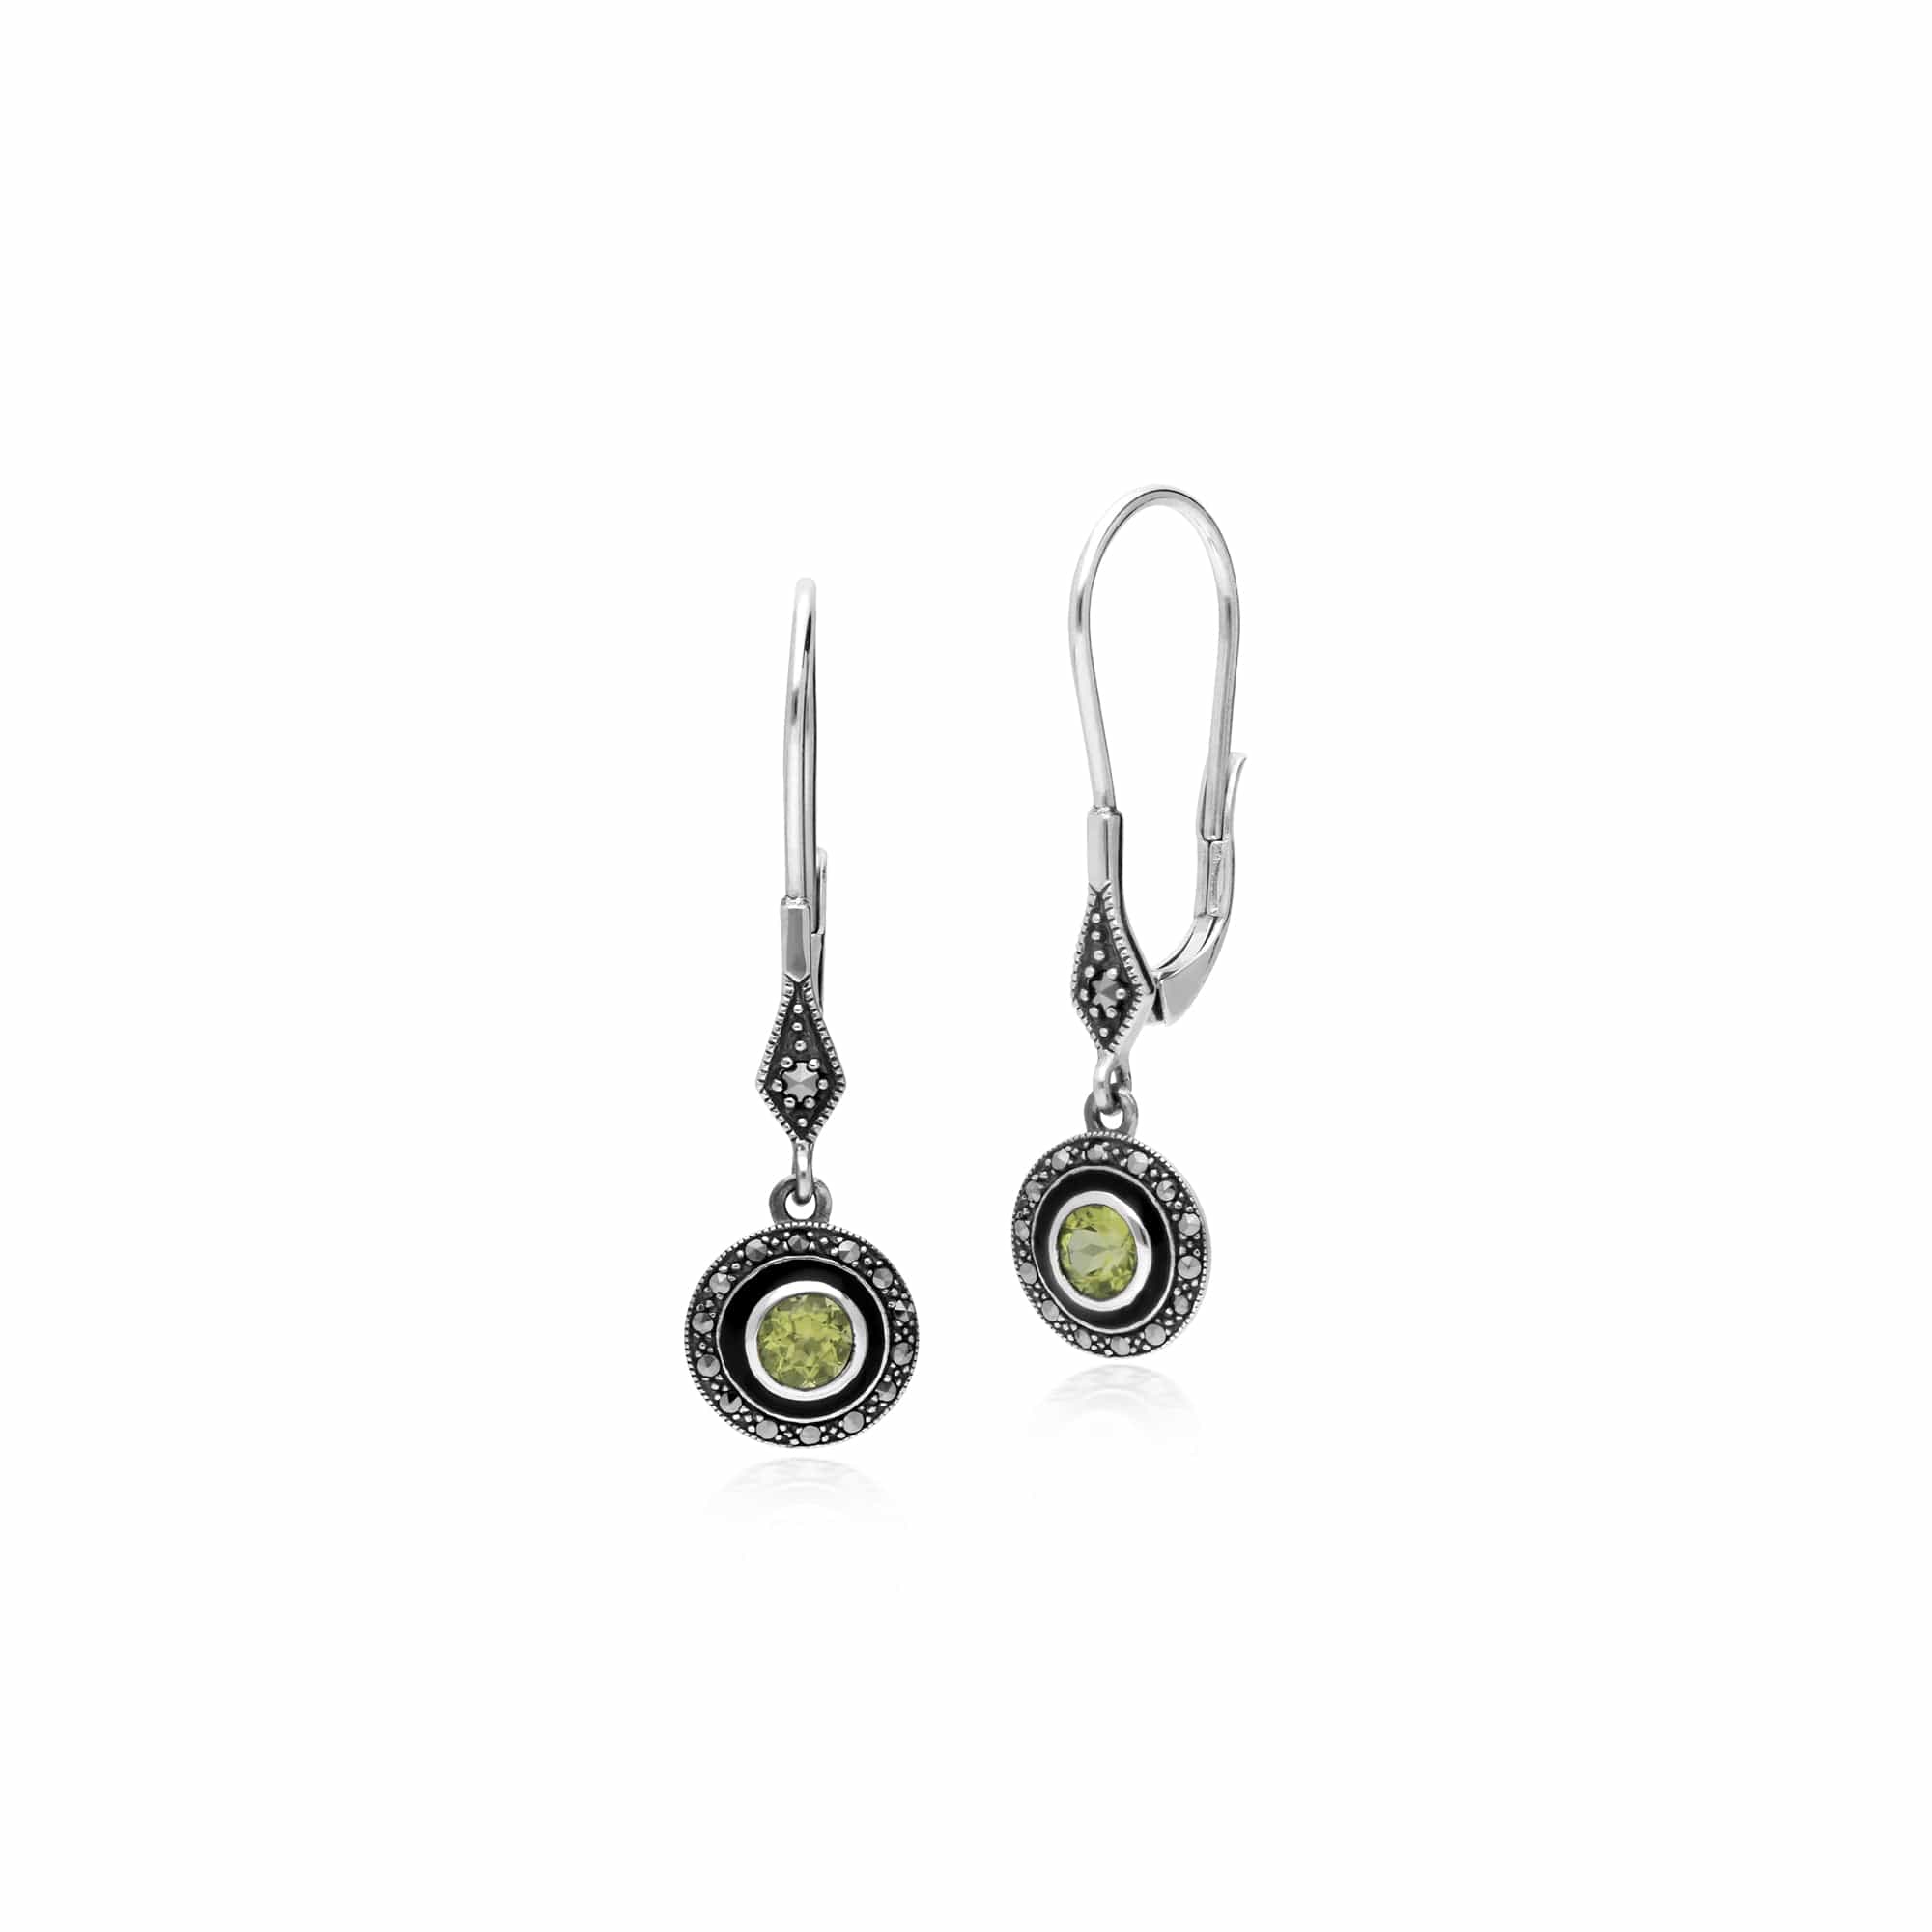 214E860704925-214P301304925 Art Deco Style Round Peridot, Marcasite & Black Enamel Drop Earrings & Pendant Set in 925 Sterling Silver 2